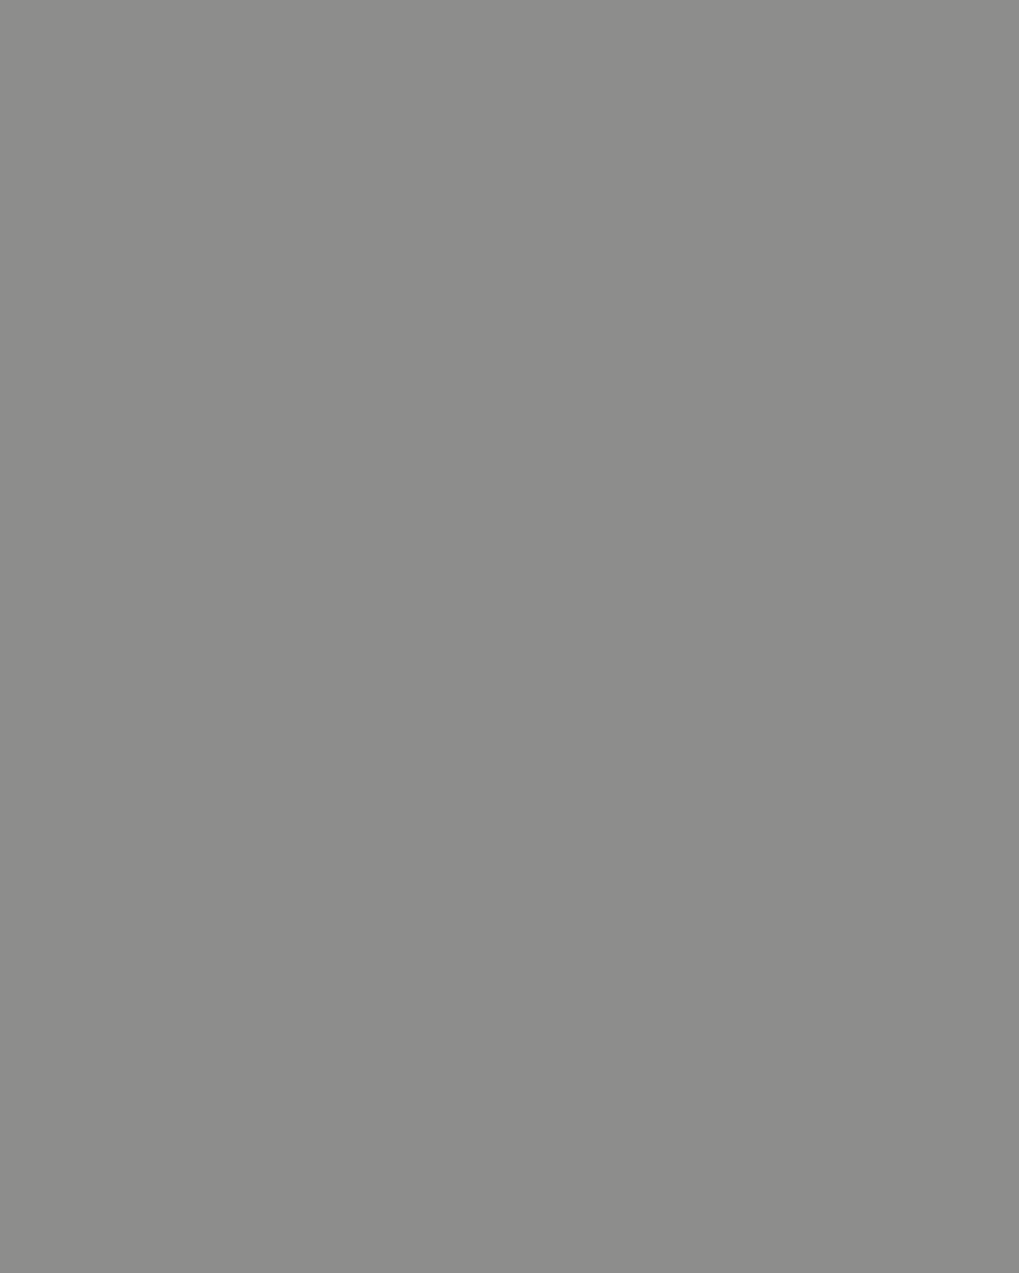 Сергей Бондарчук на съемках своего художественного фильма «Война и мир». 1964. Фотография: yablor.ru